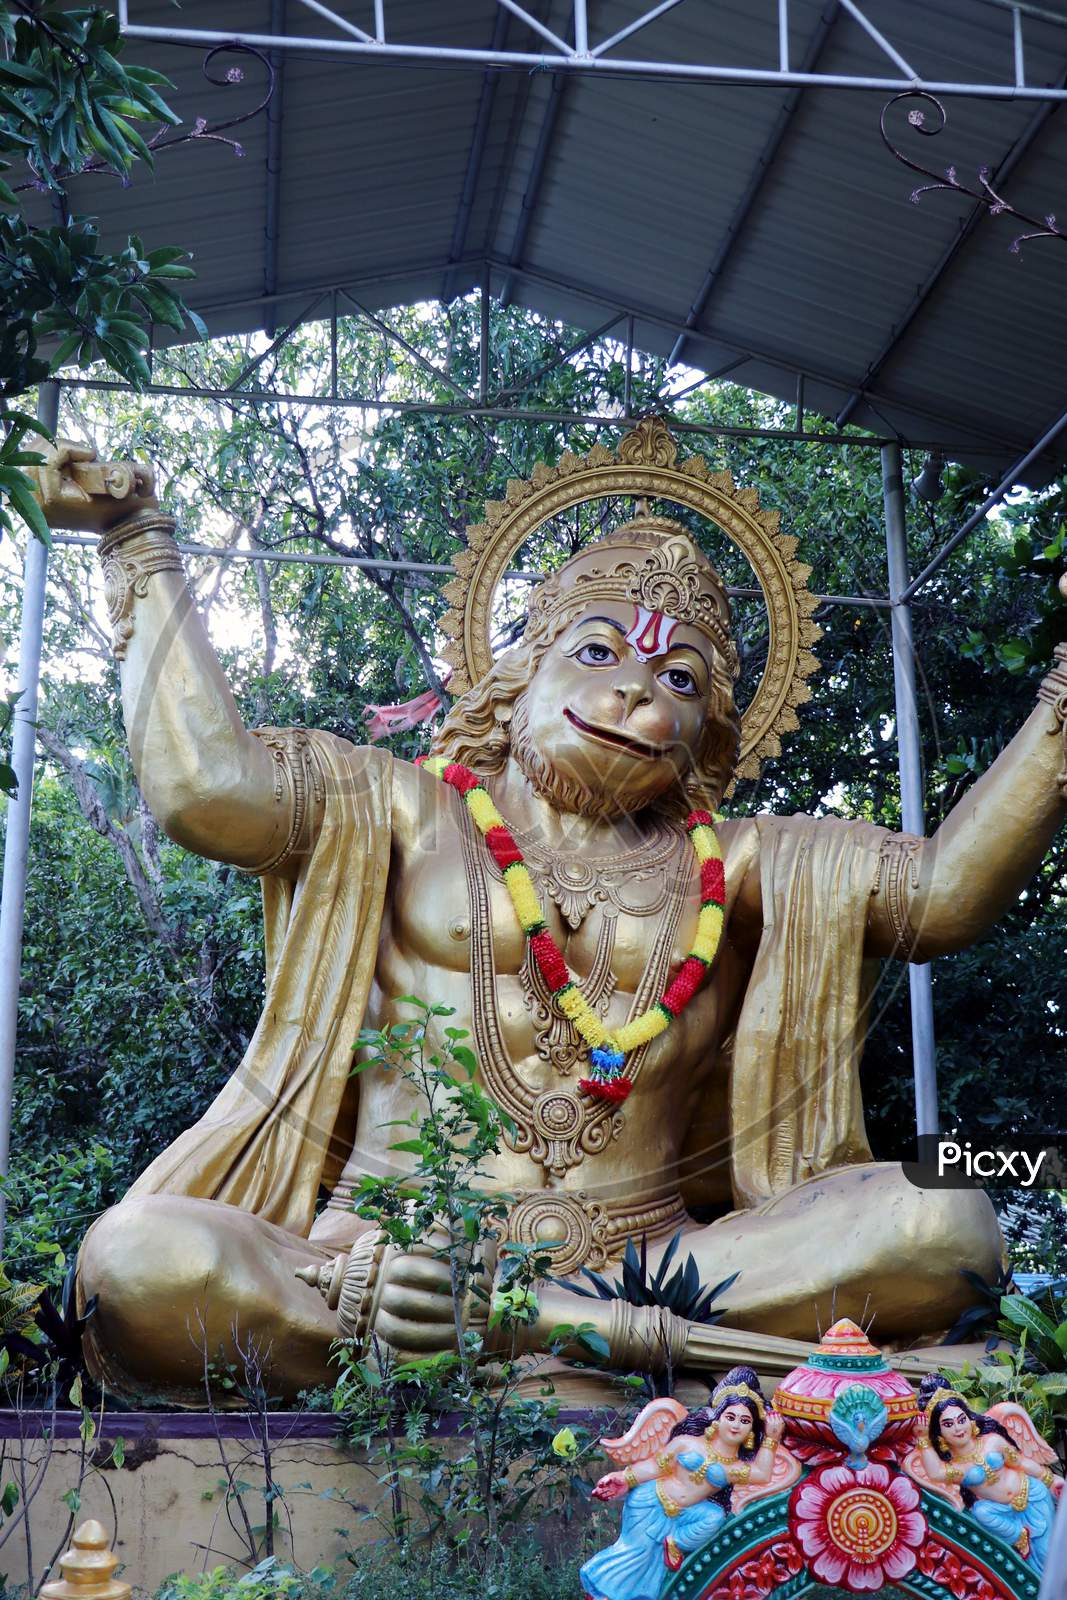 Lord Hanuman Idol in a Temple